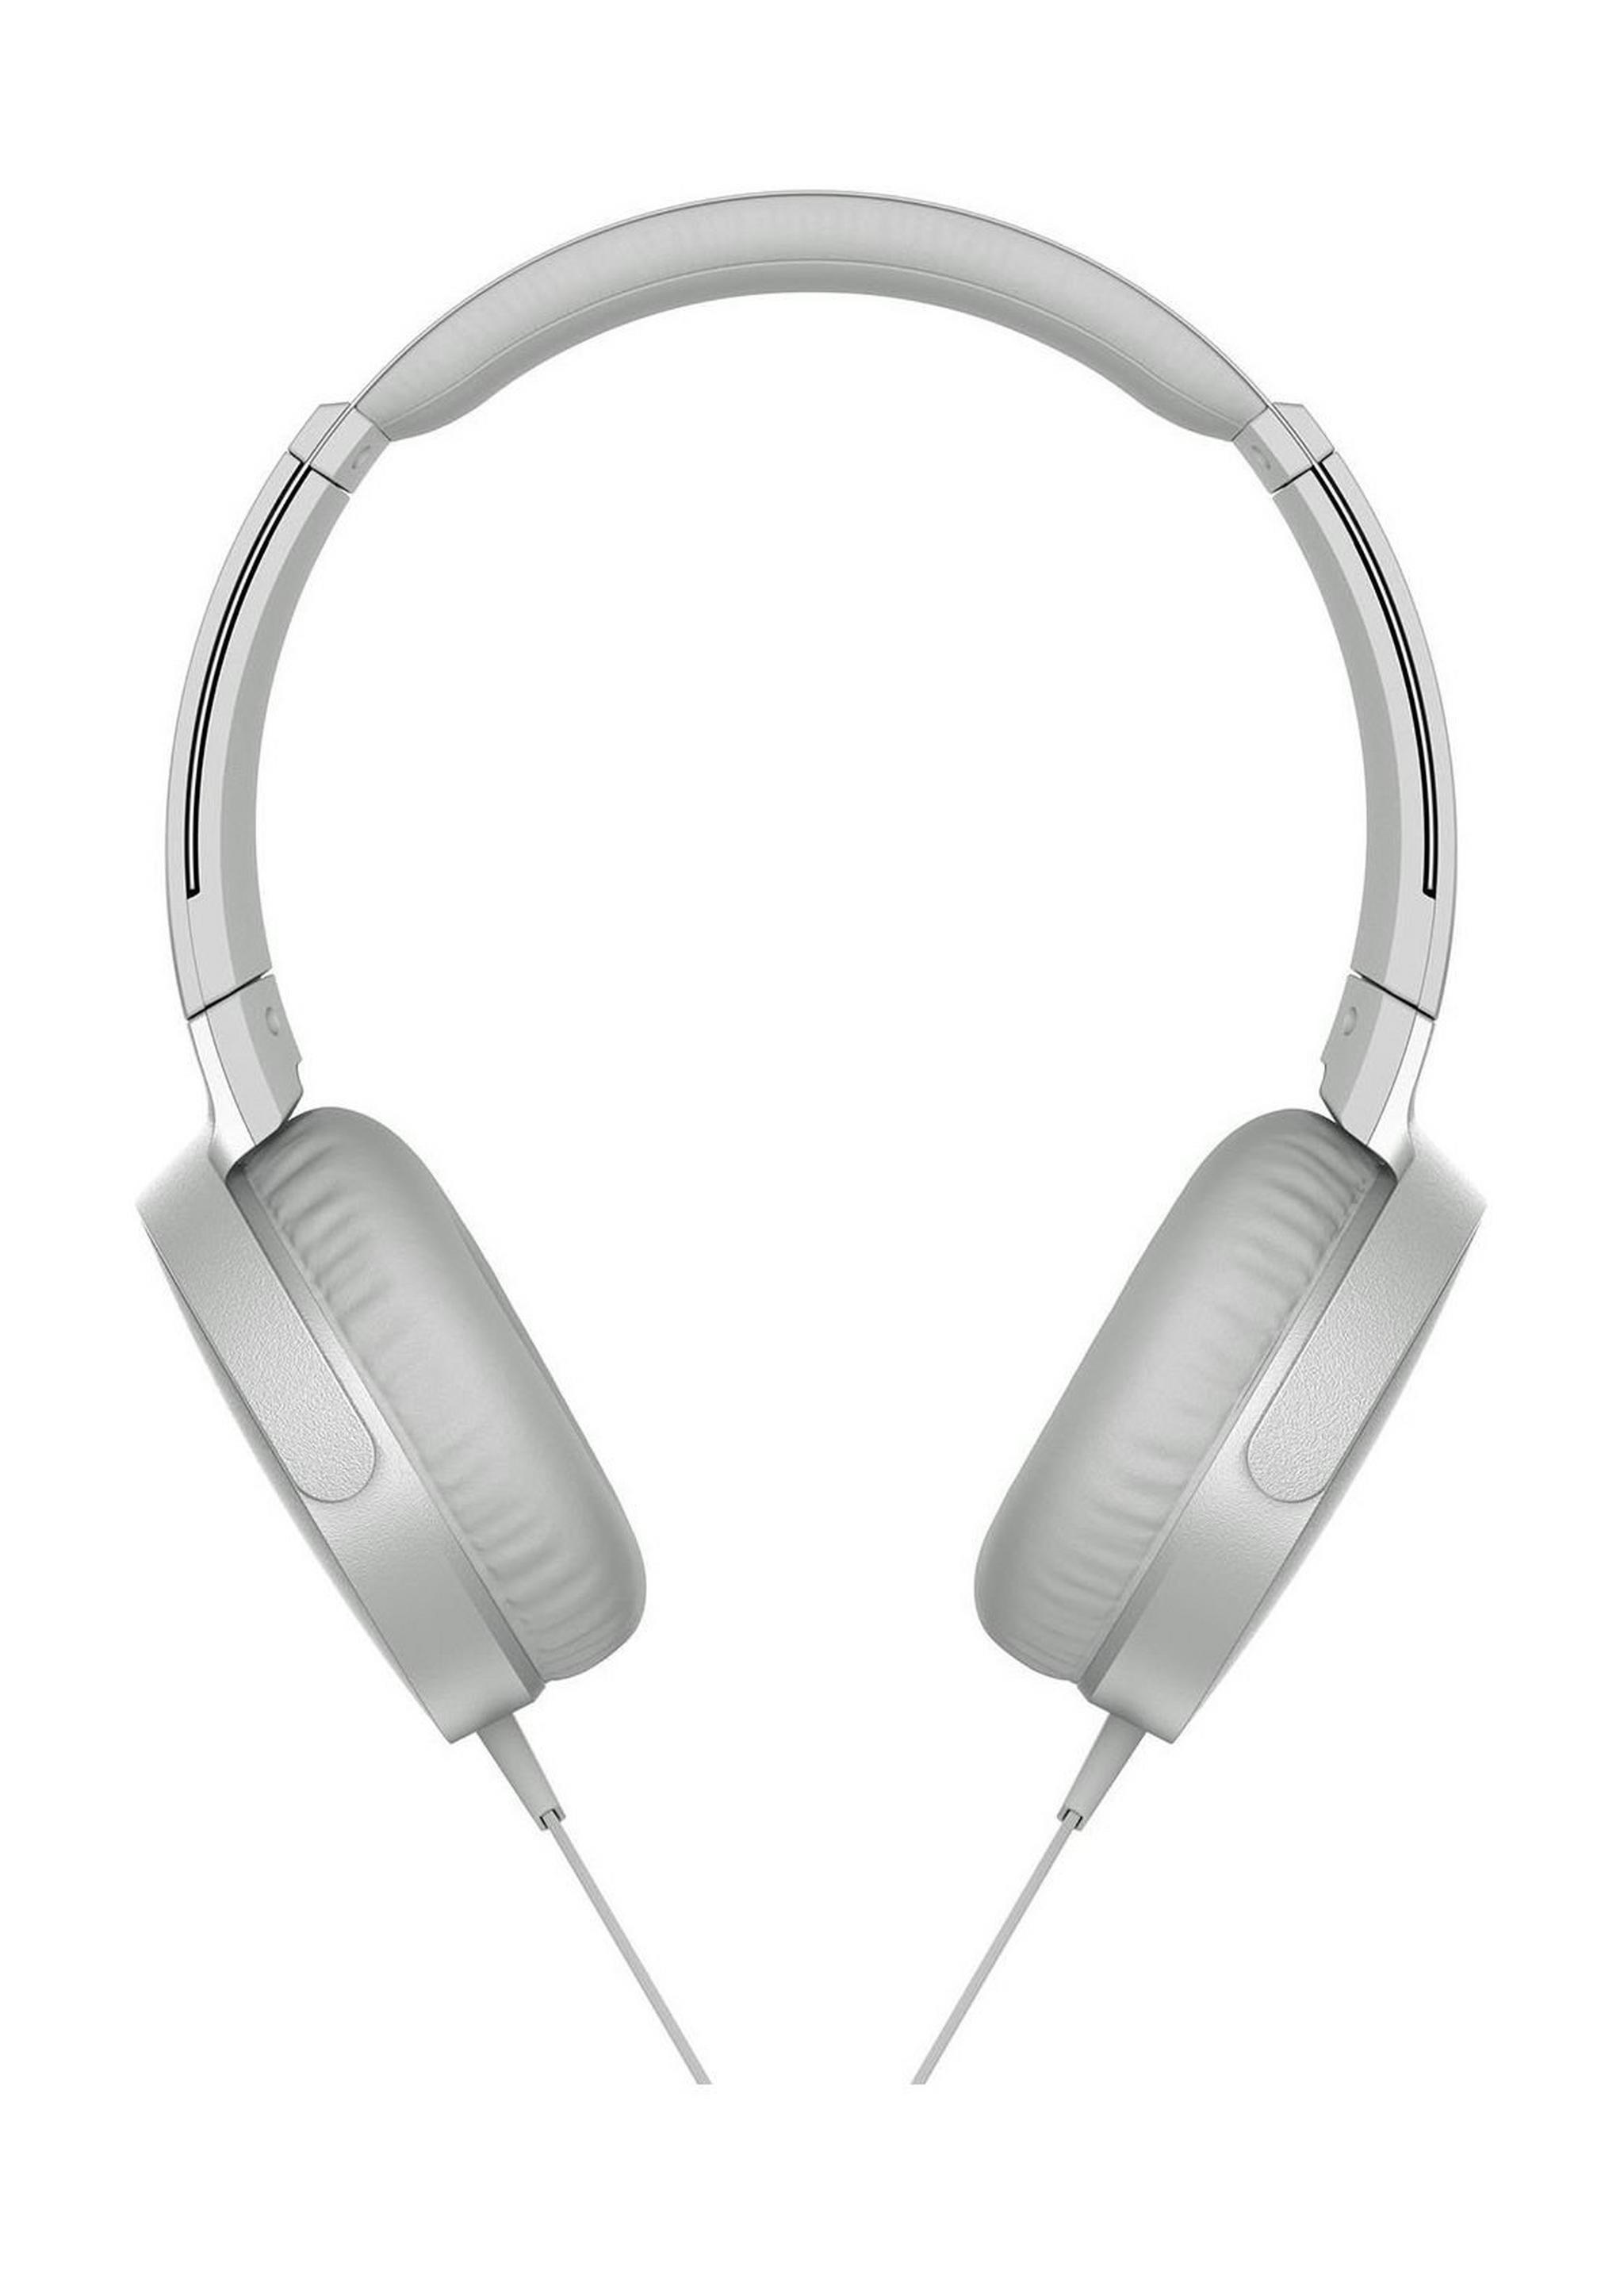 سماعة الرأس  سوني إكسترا للصوت القوي والضخم - أبيض (MDR-XB550AP)